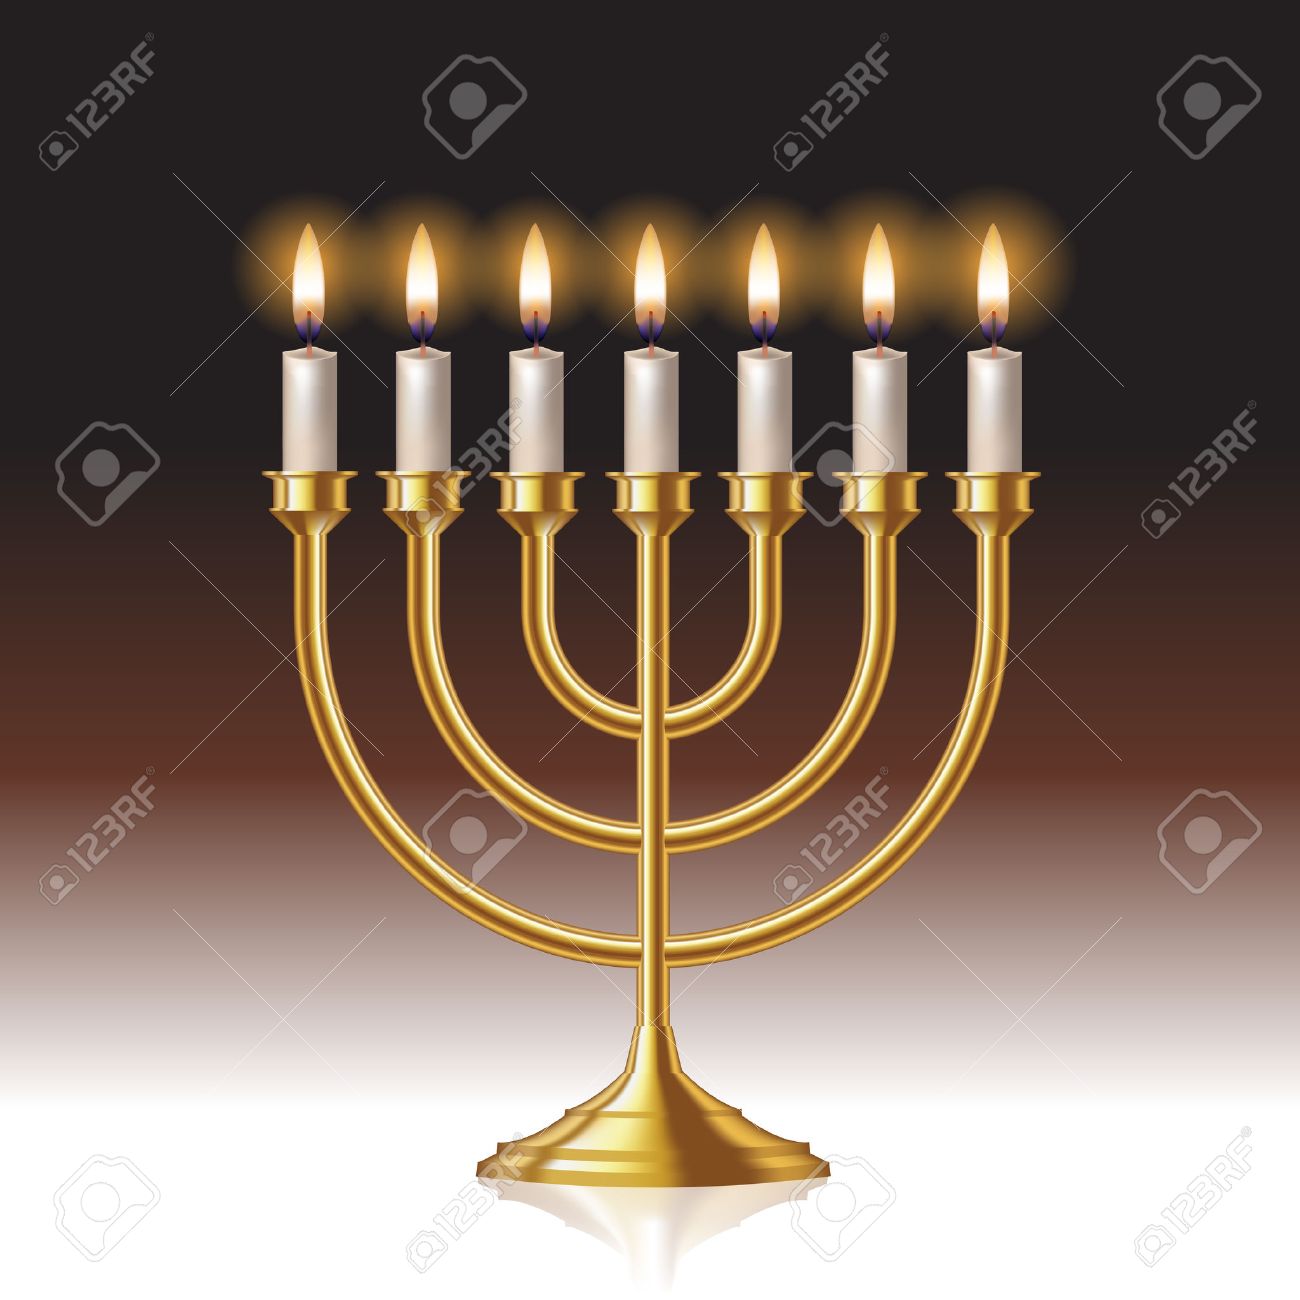 40869482-menorah-de-hanukkah-con-velas-aisladas-en-el-fondo-ilustración-vectorial